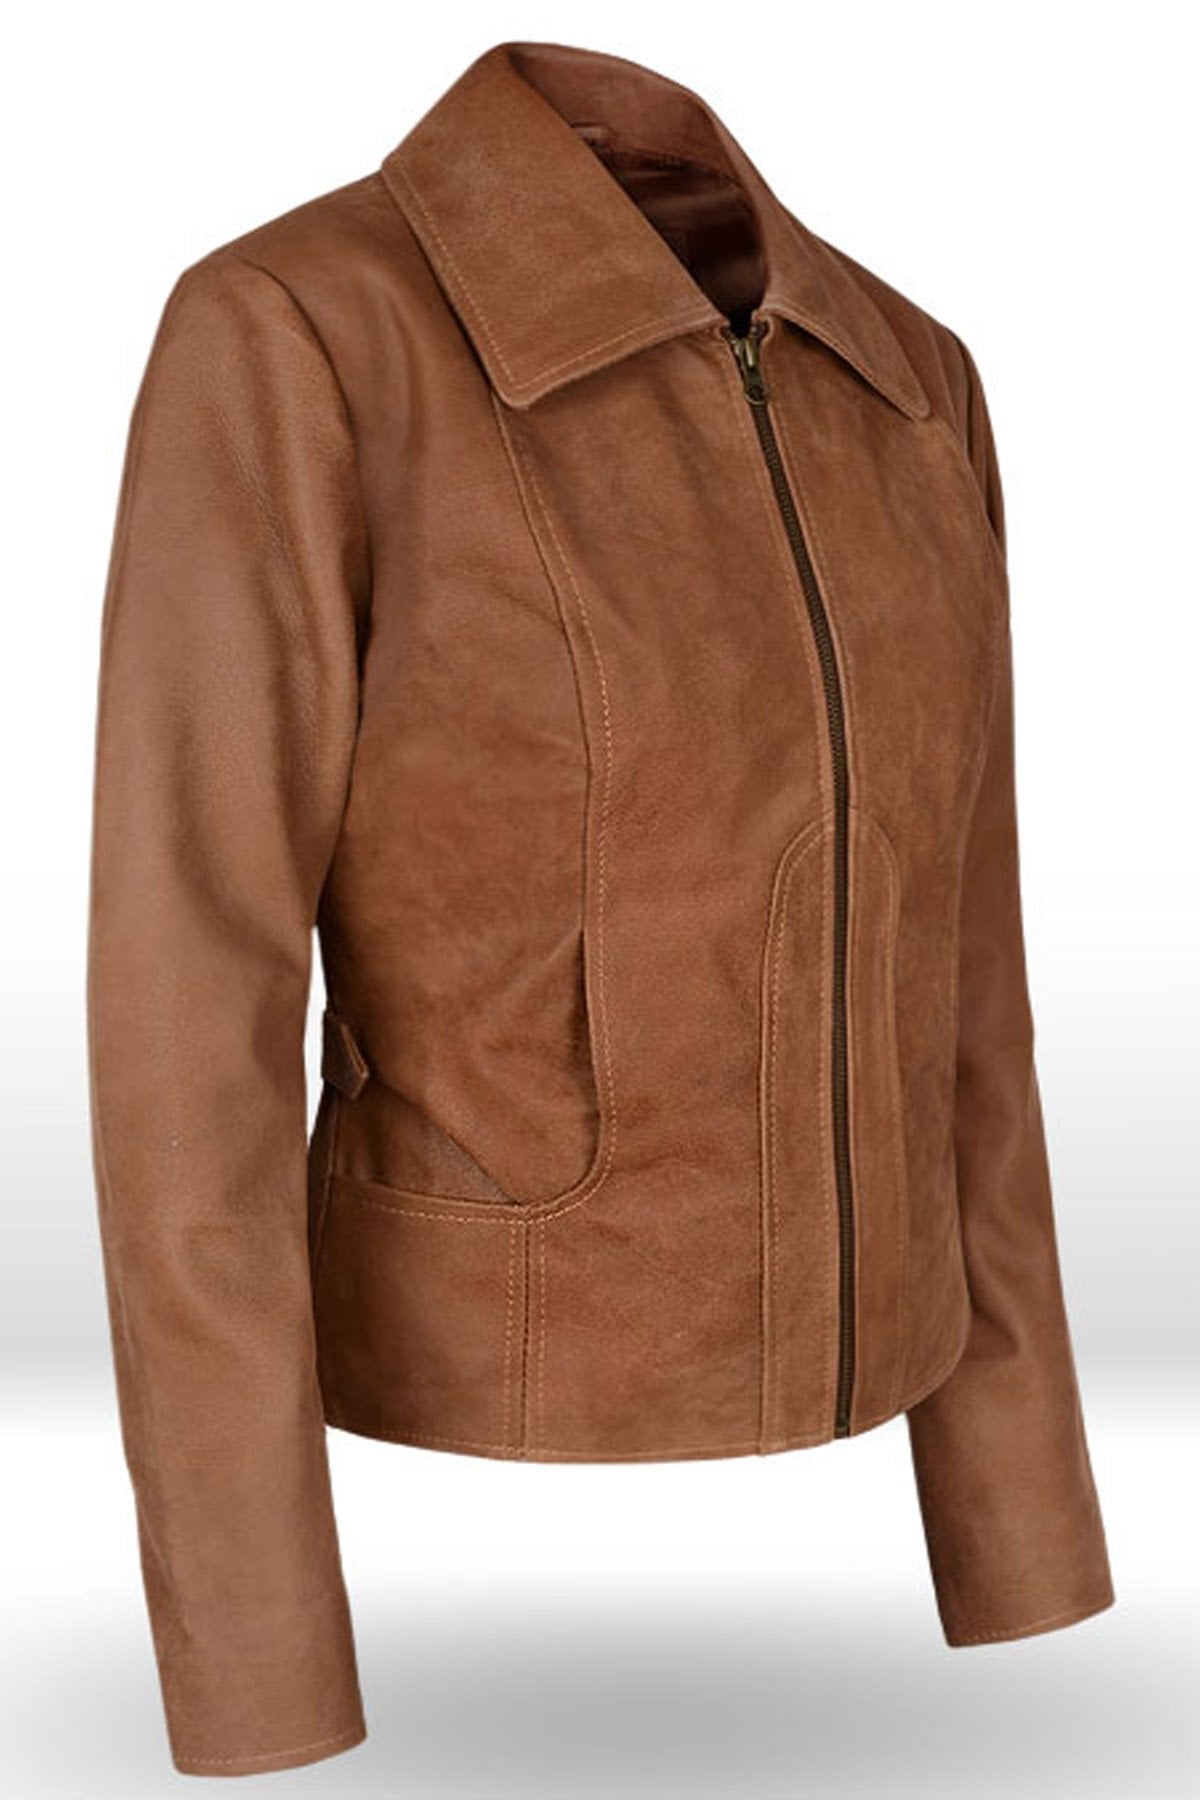 Loving Jennifer Lopez Gigli Leather Jacket For Women’s